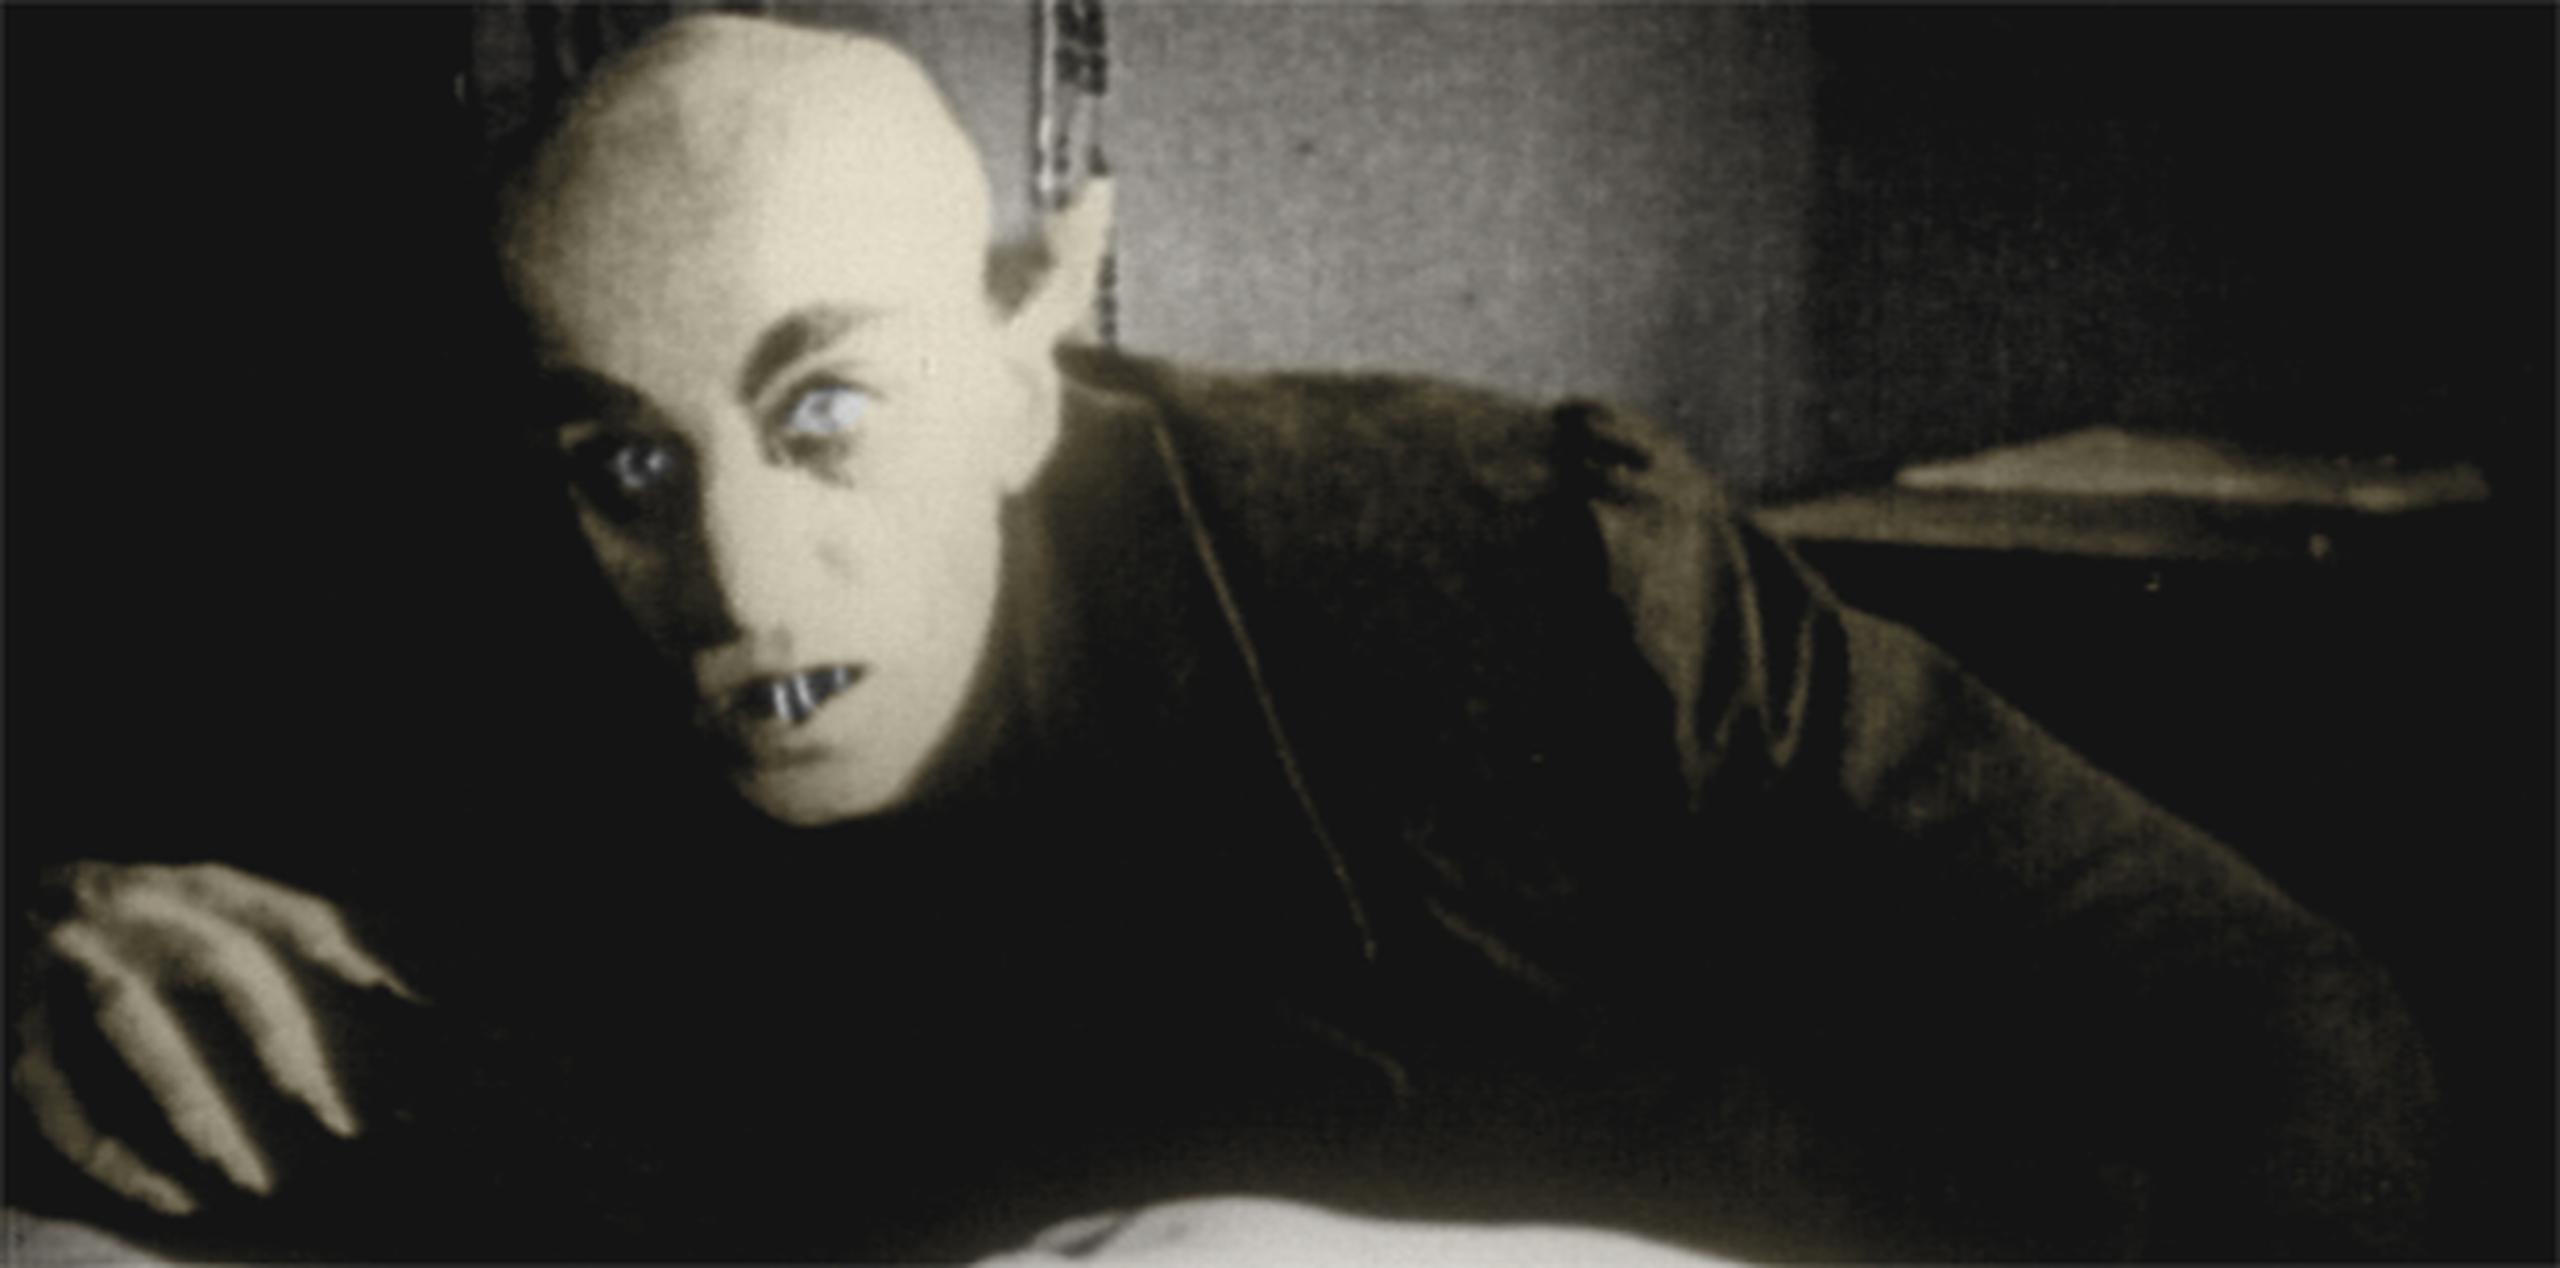 En el año 2012 ya se había localizado la tumba de otro "vampiro" cerca de un monasterio medieval a orillas del Mar Negro. En la imagen, el filme "Nosferatu" (1922).